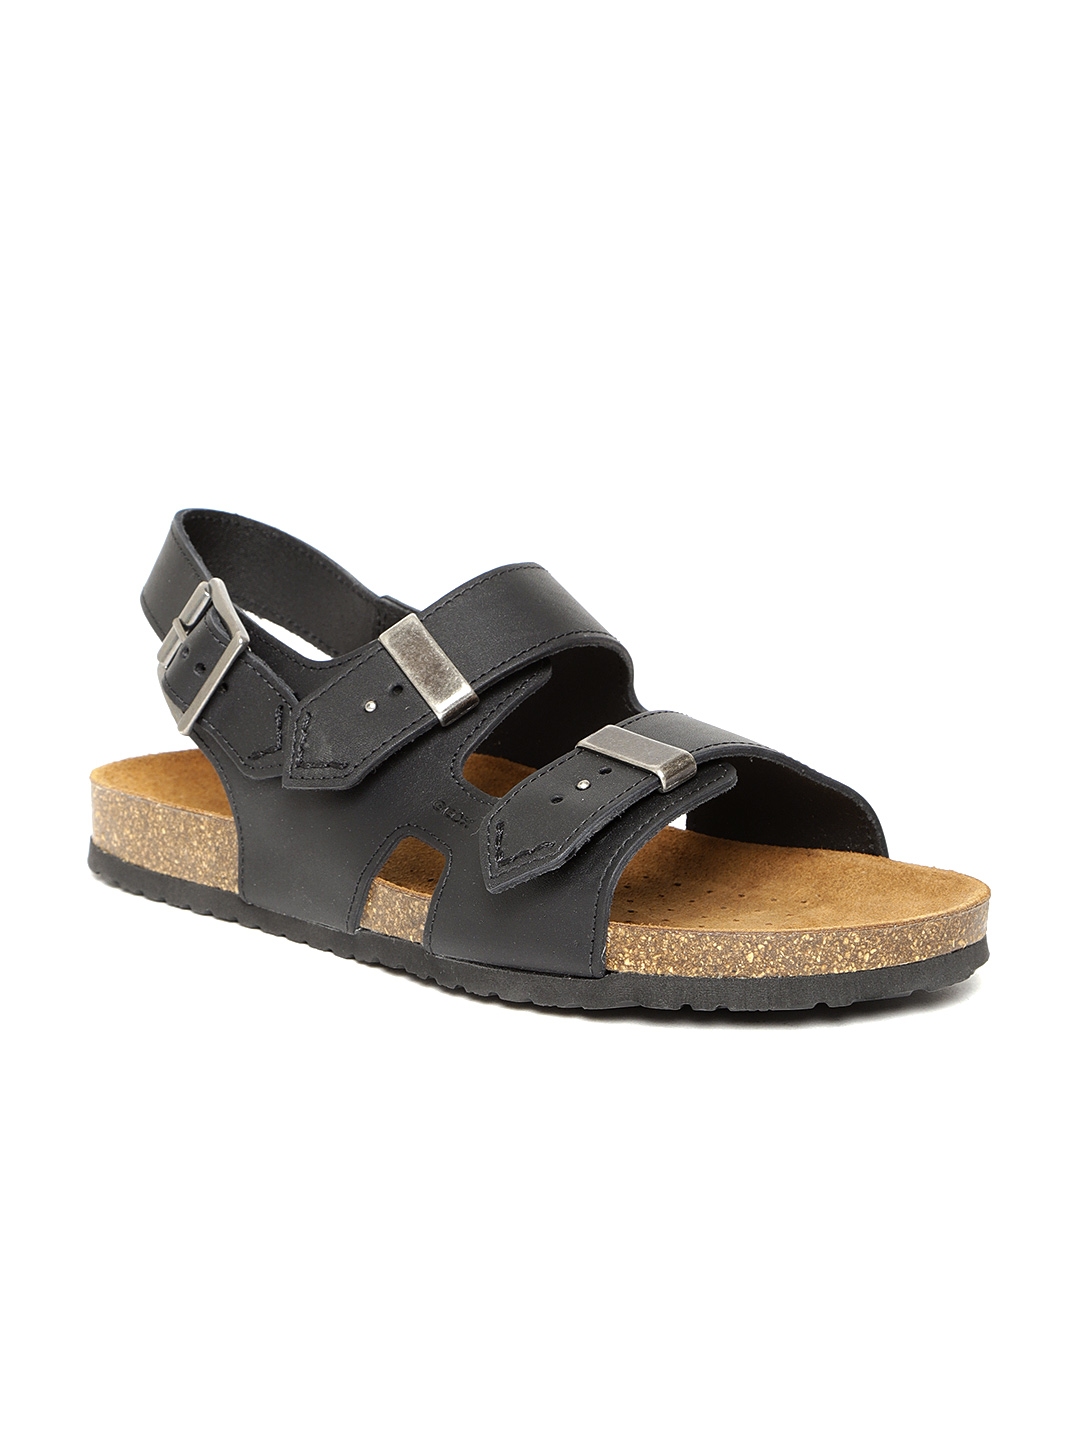 Buy Geox Men Black Comfort Sandals - Sandals for Men 7520740 | Myntra